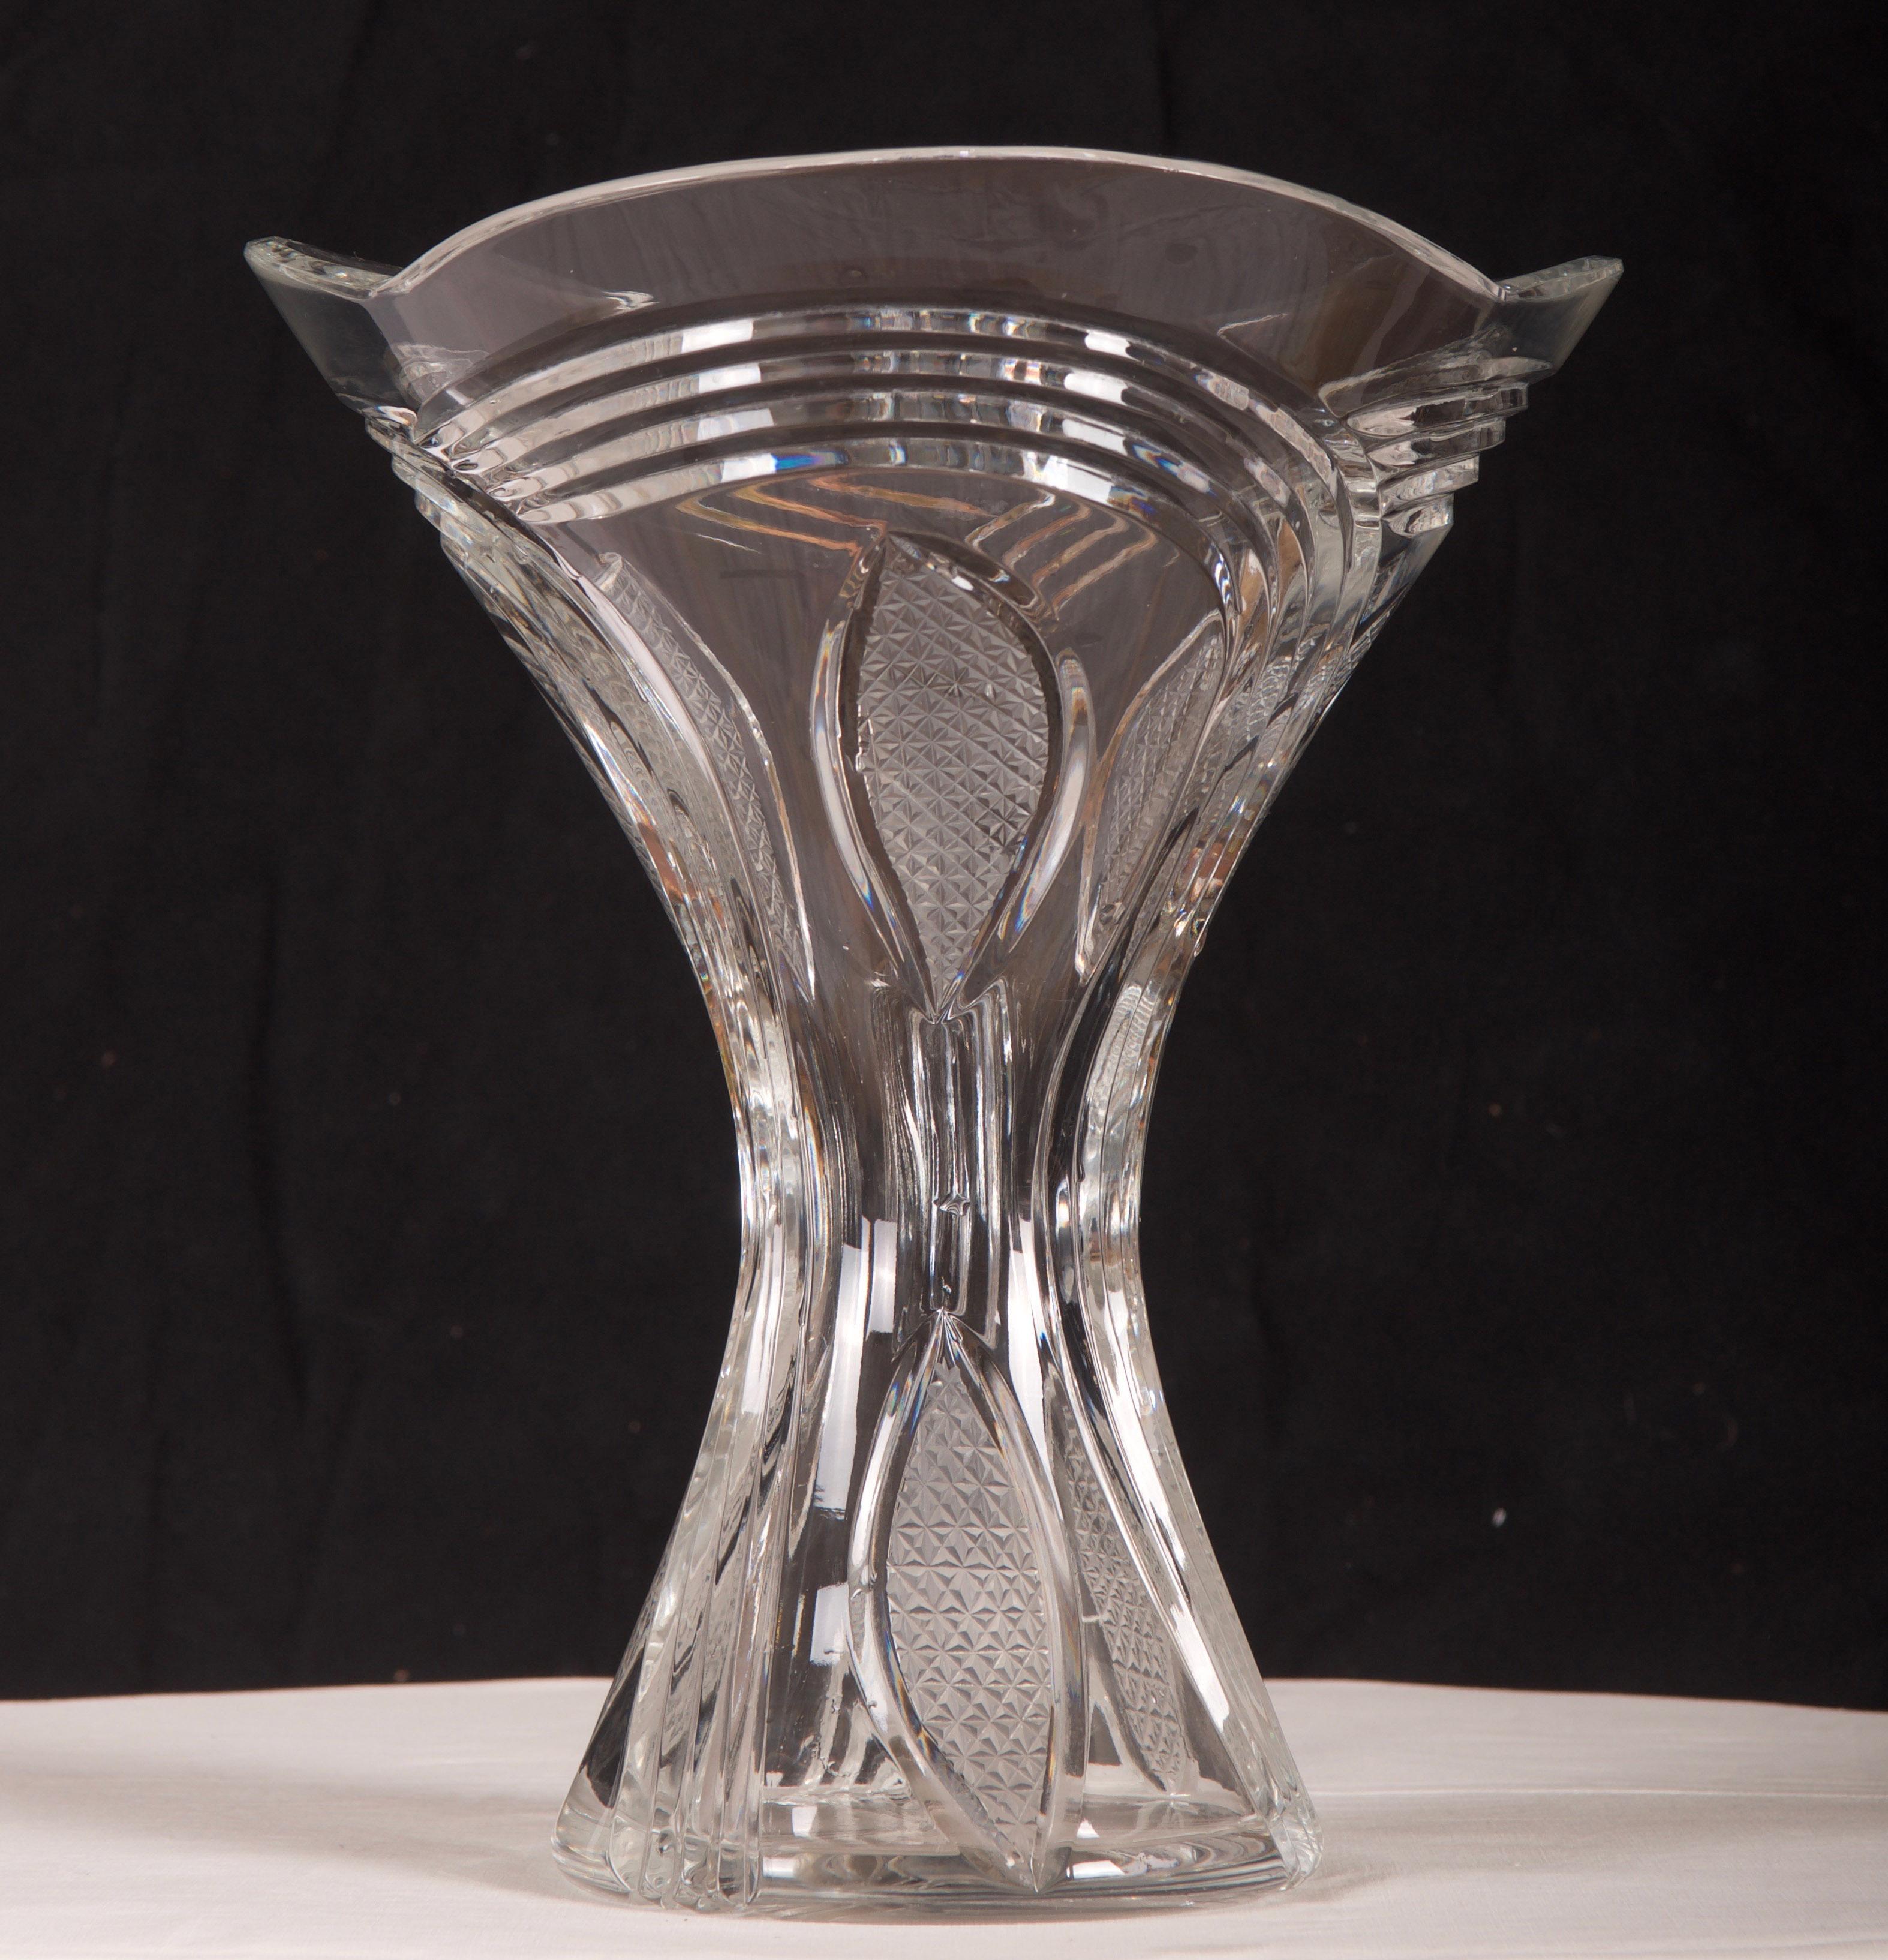 Vase aus geschliffenem Kristall, hergestellt in den 1970er Jahren in einer der böhmischen Glashütten.